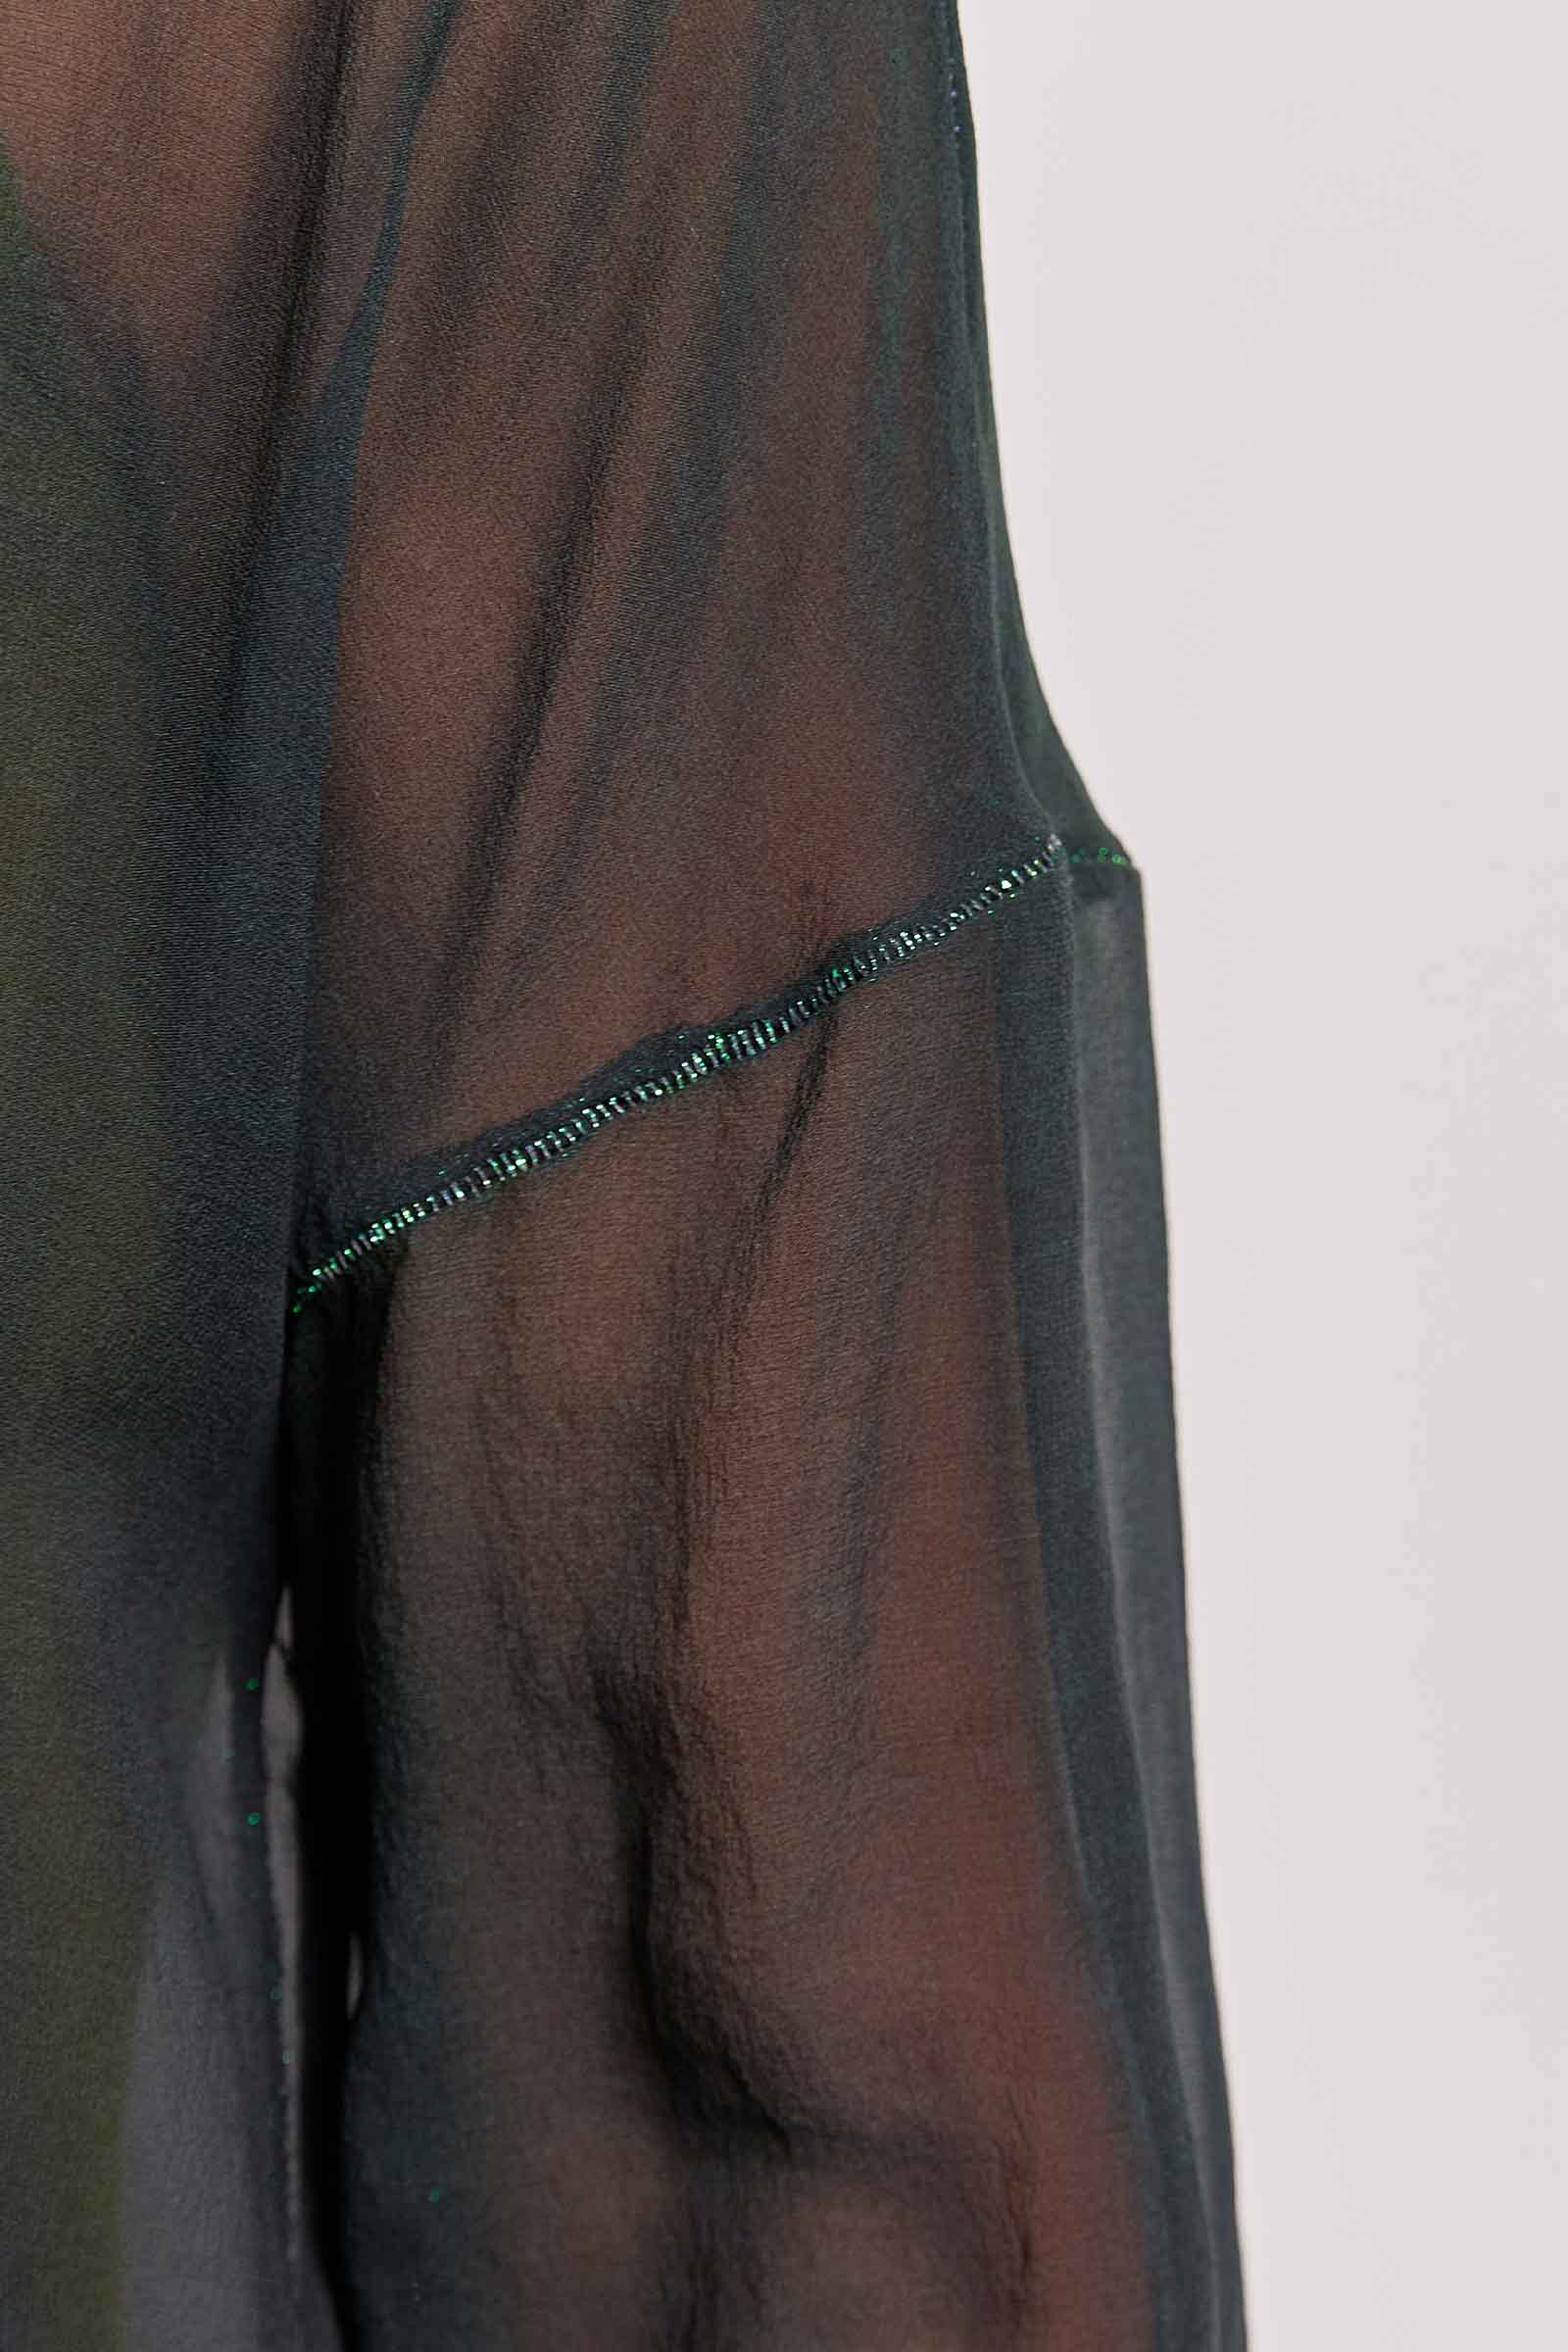 quincy dark ombré silk georgette top.